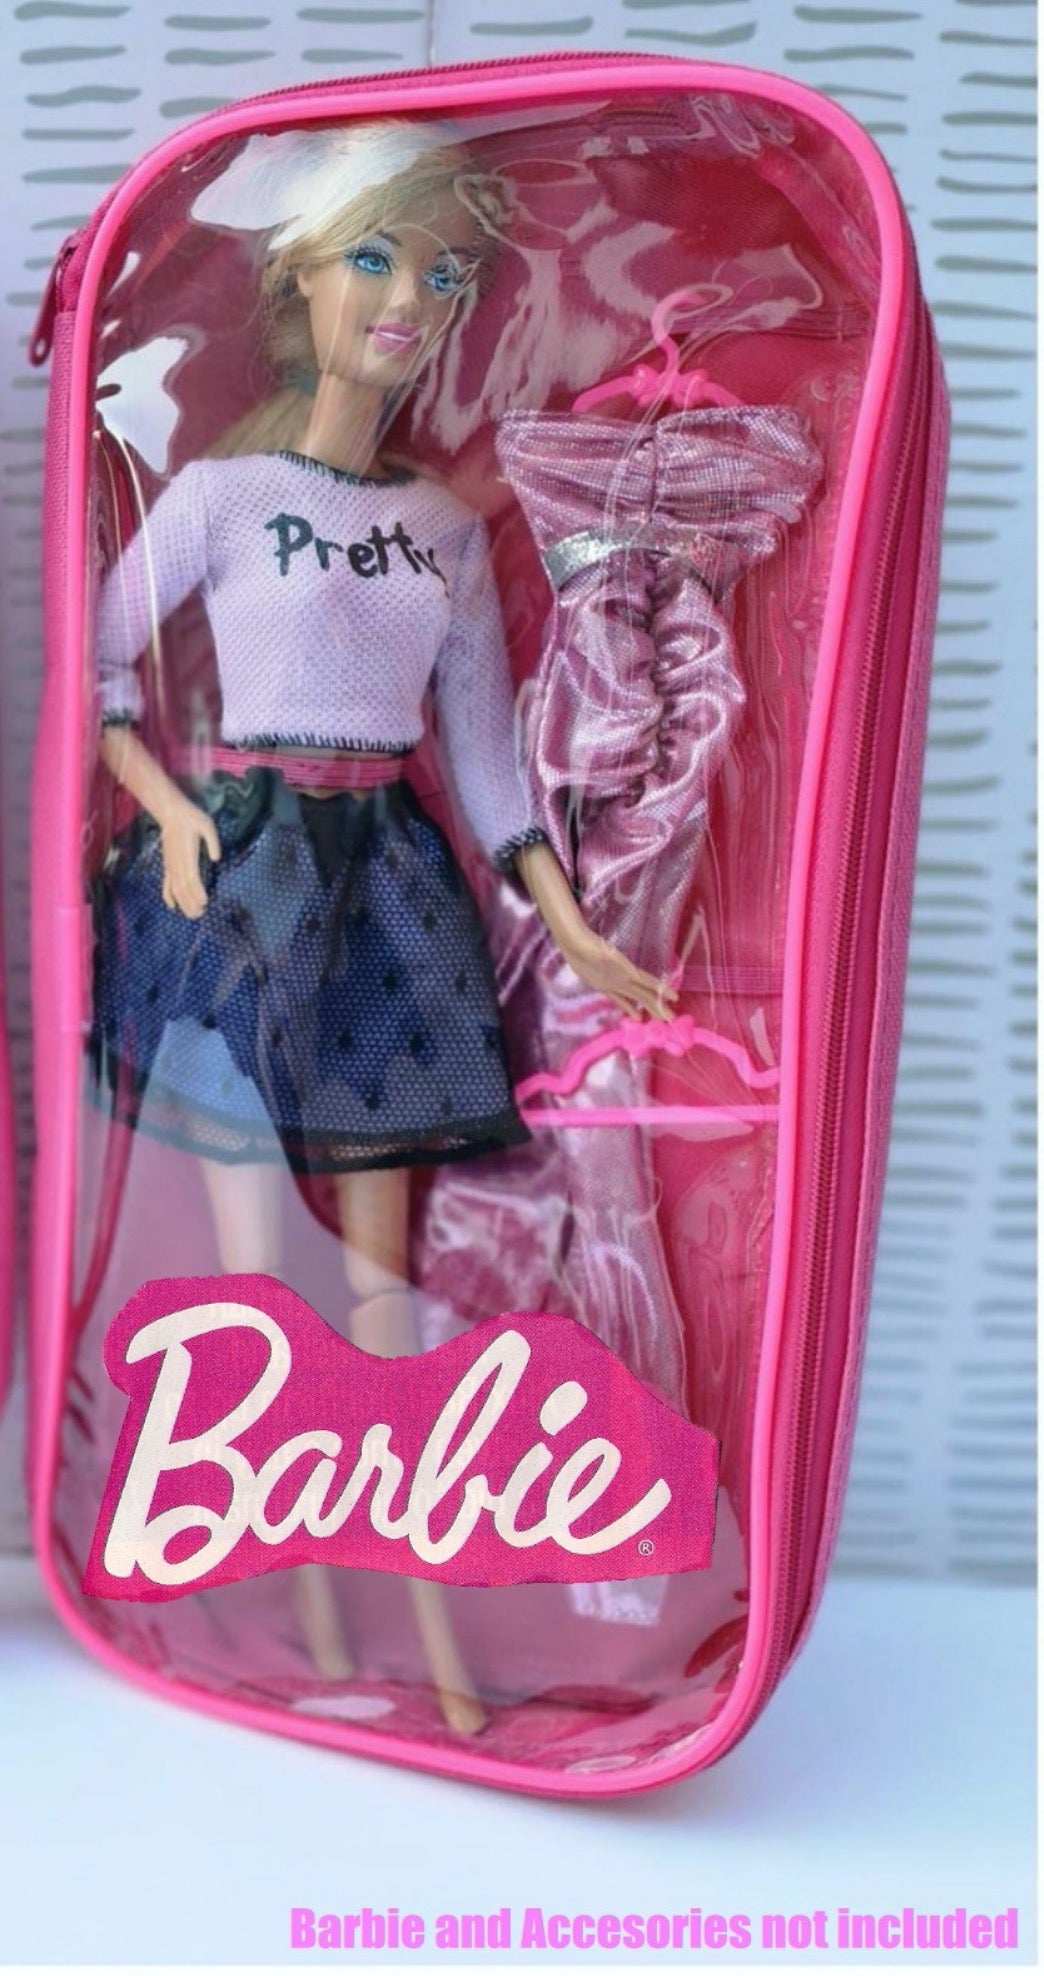 This is Bangkok | Fashion, Barbie fashion, Fashion dolls